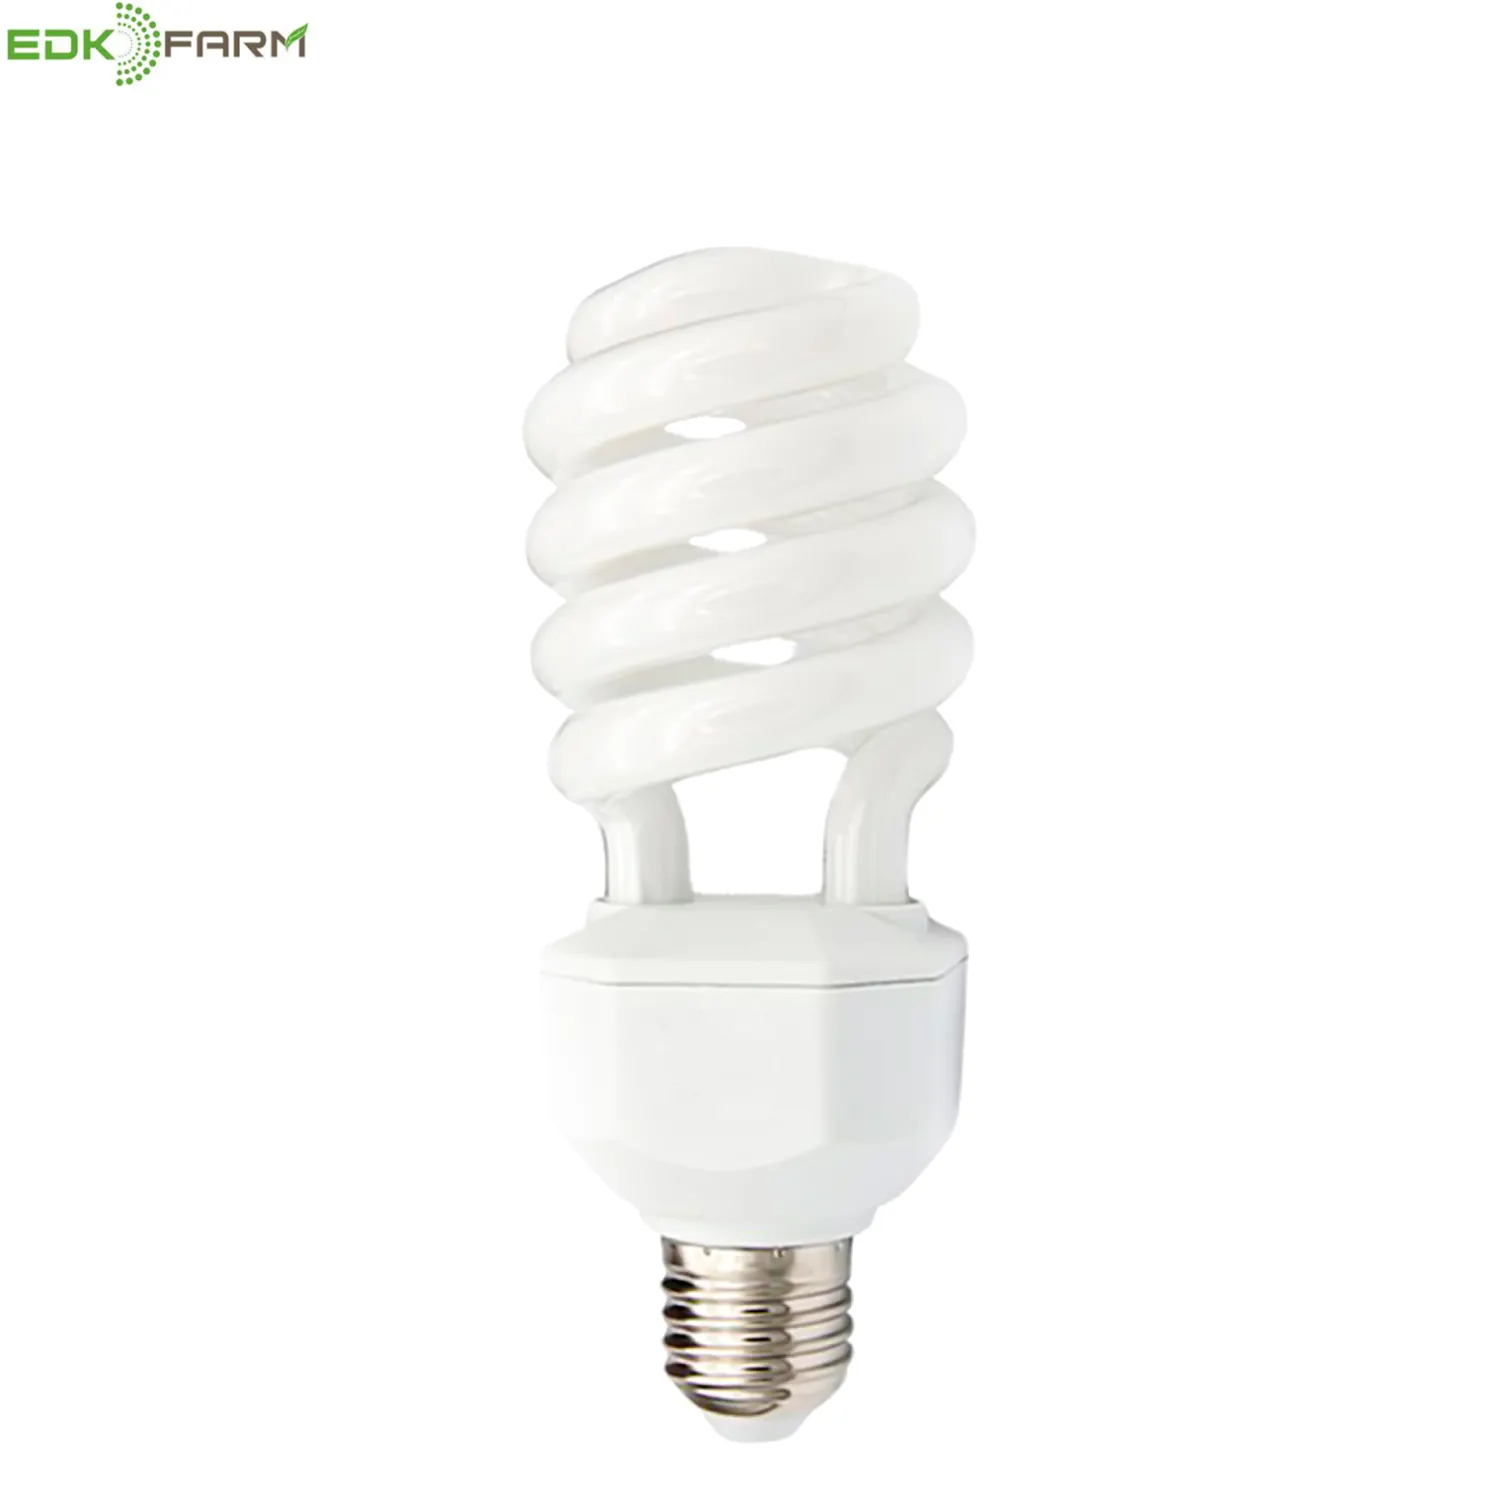 compact fluorescent light bulb